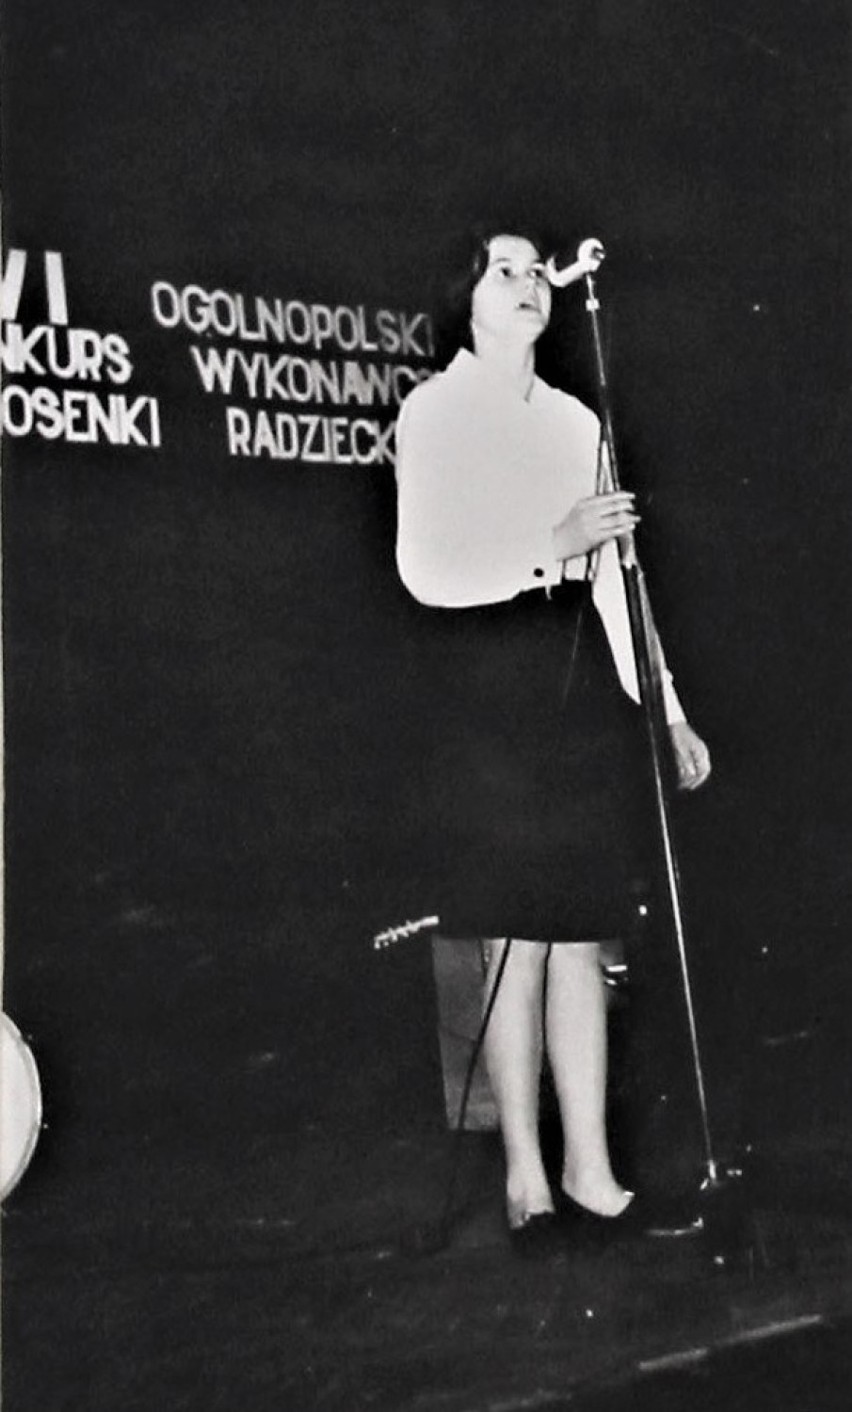 Konkurs piosenki radzieckiej, lata 60.